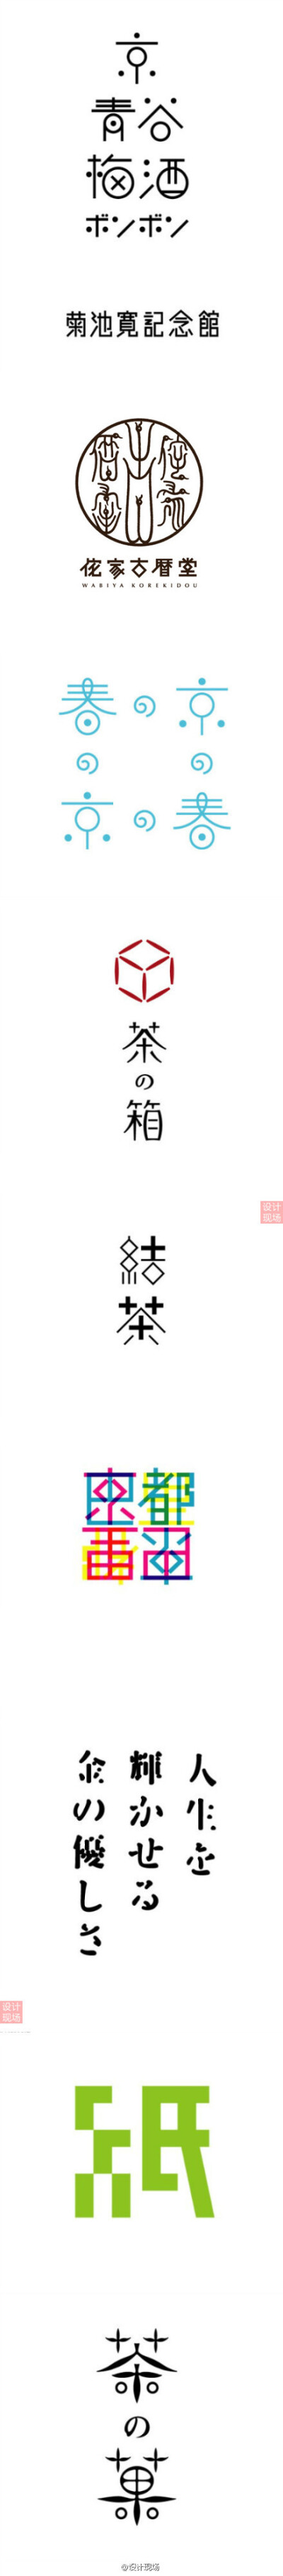 日本设计大师三木健先生的部分字体设计作品